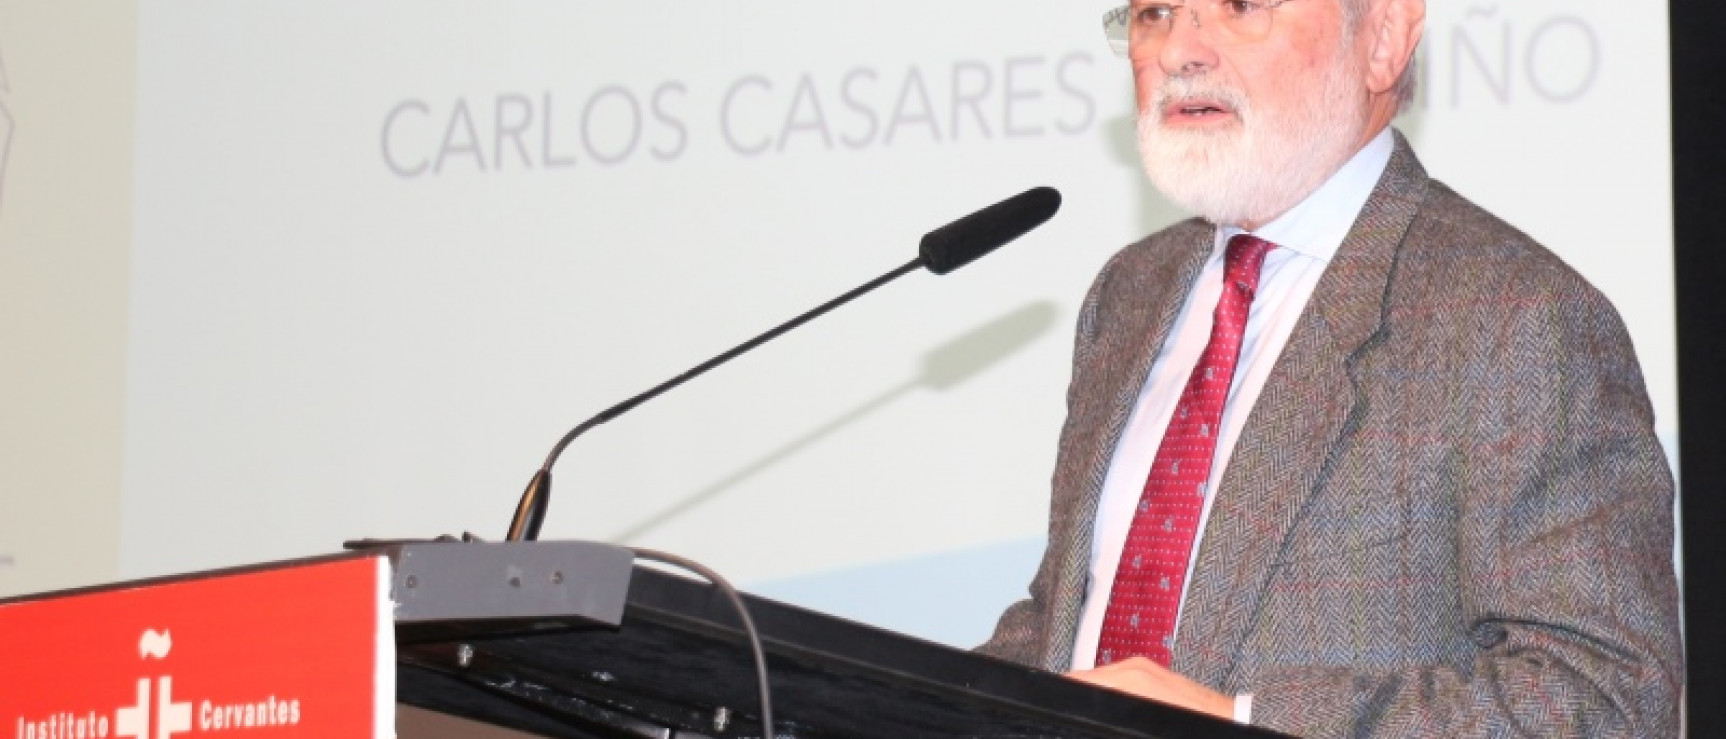 Darío Villanueva participa en el homenaje al escritor gallego Carlos Casares.